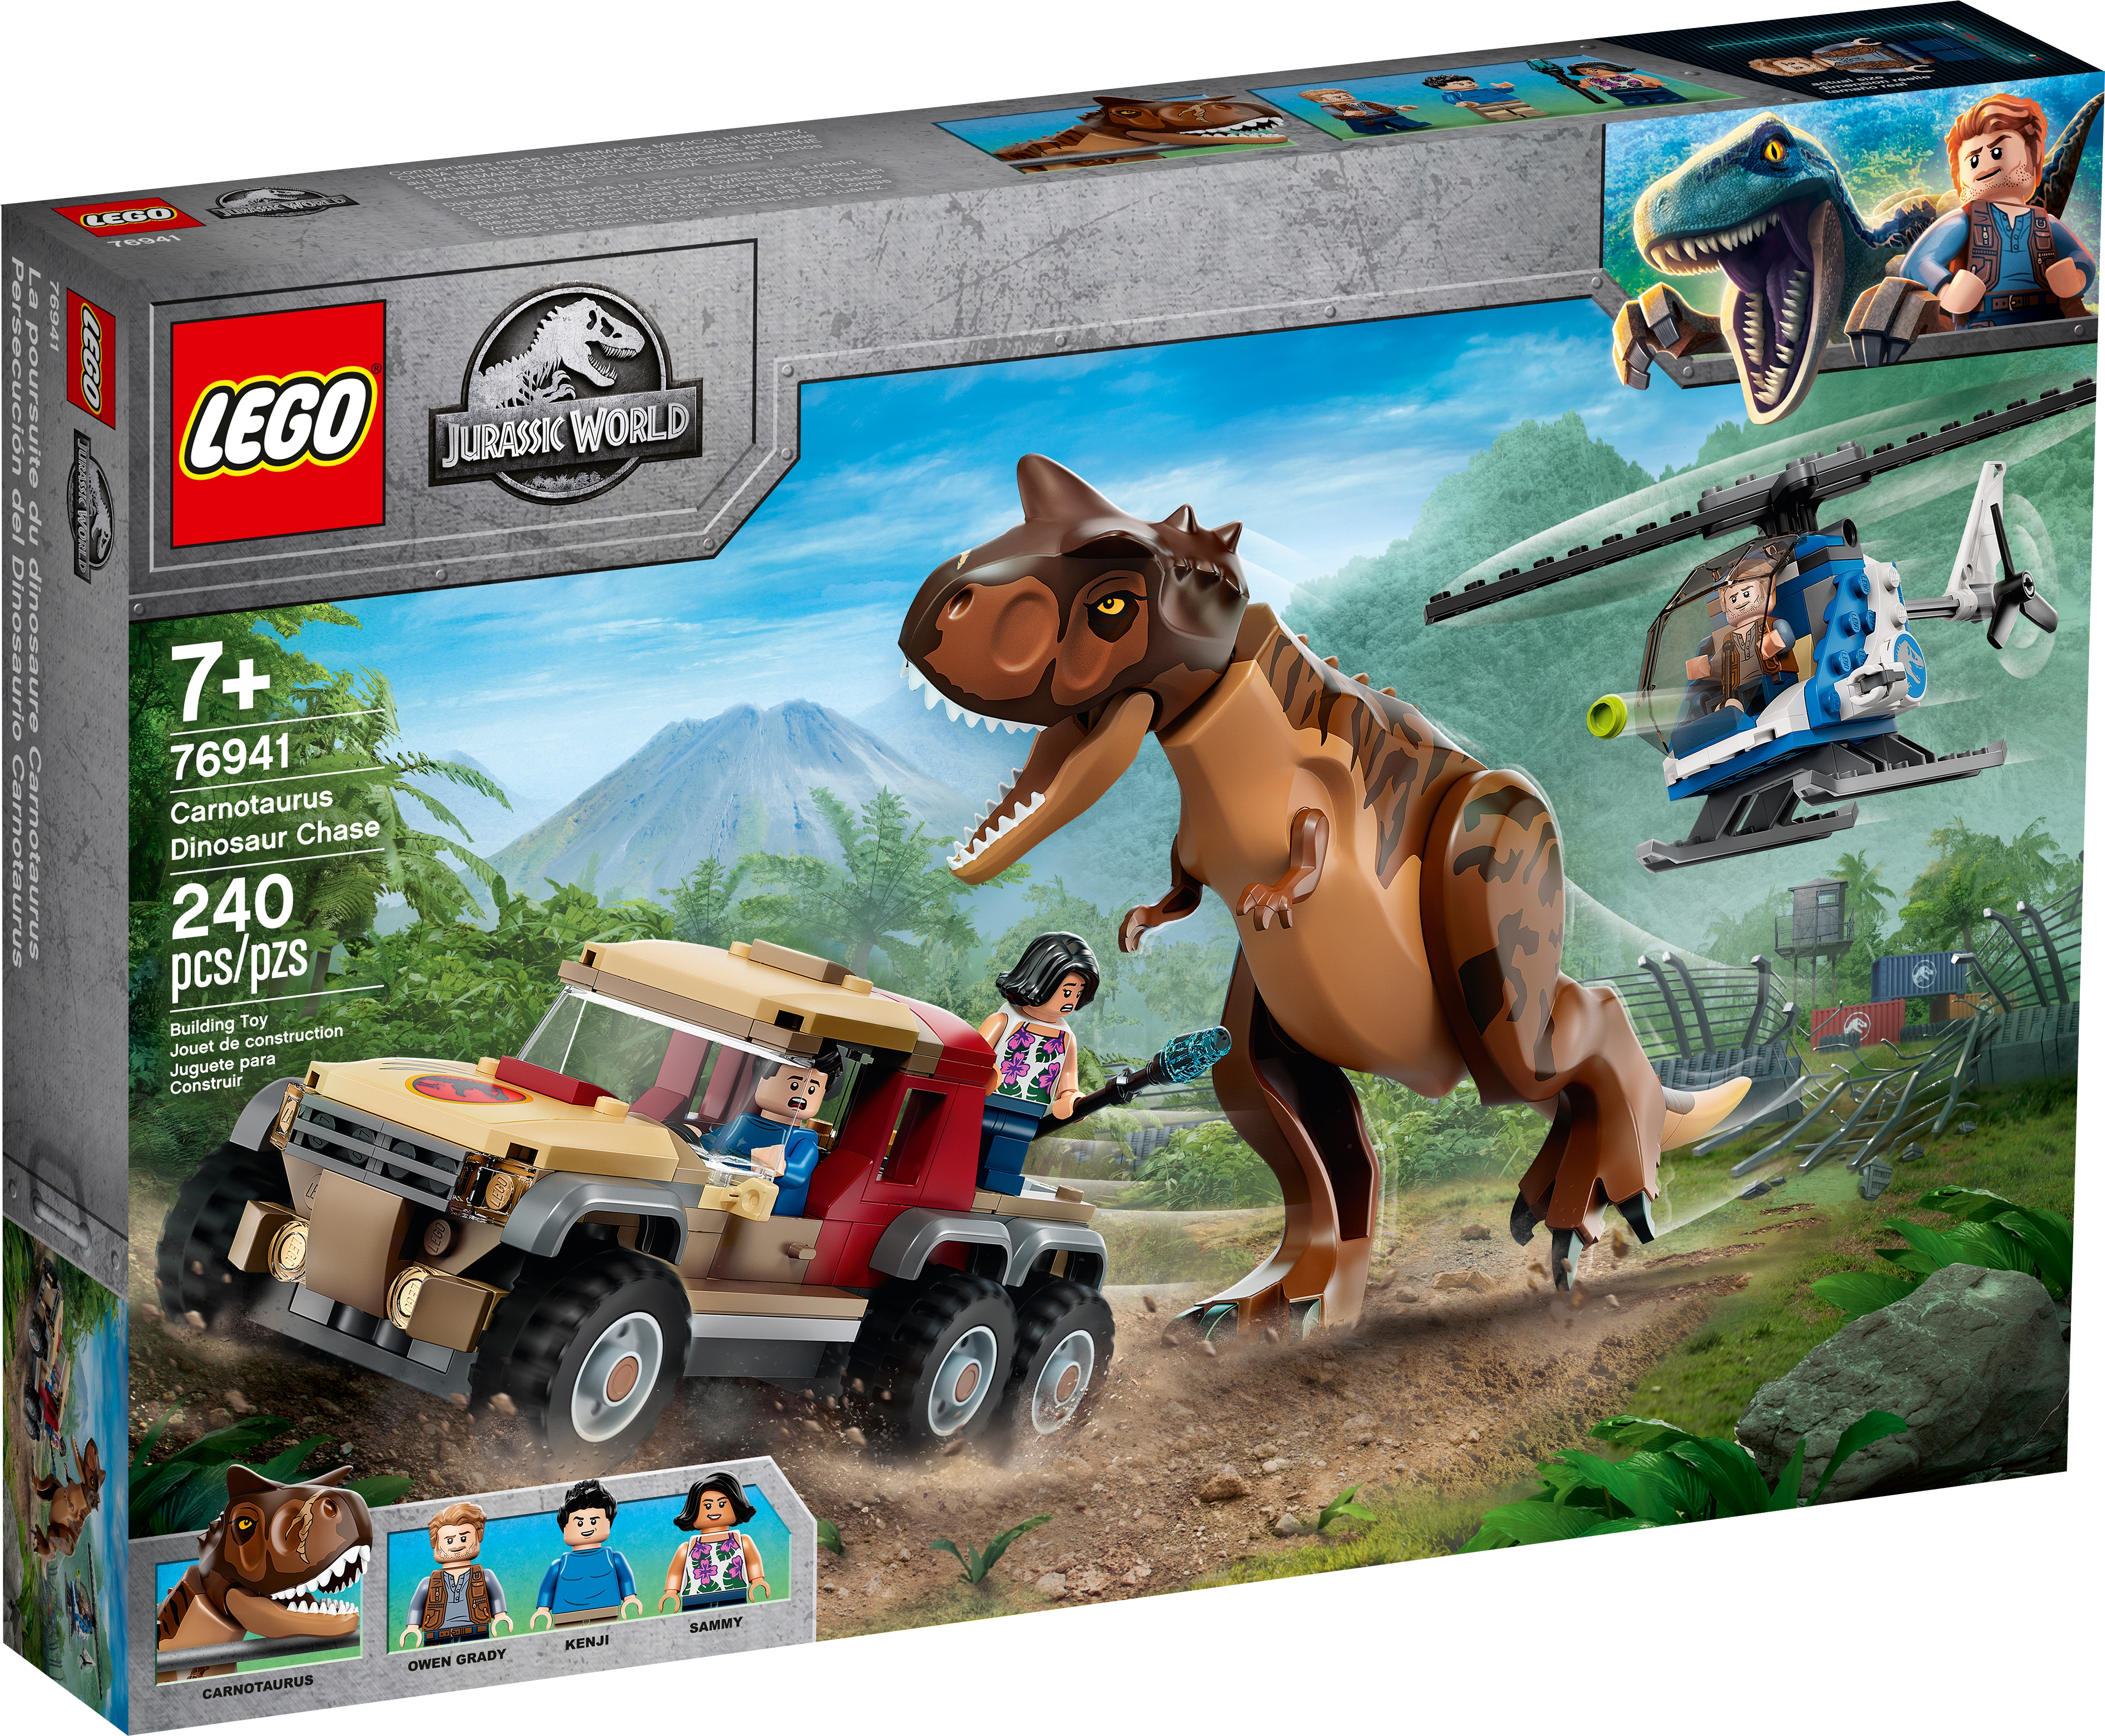 LEGO Jurassic World Carnotaurus Dinosaur Chase Toy 76941 